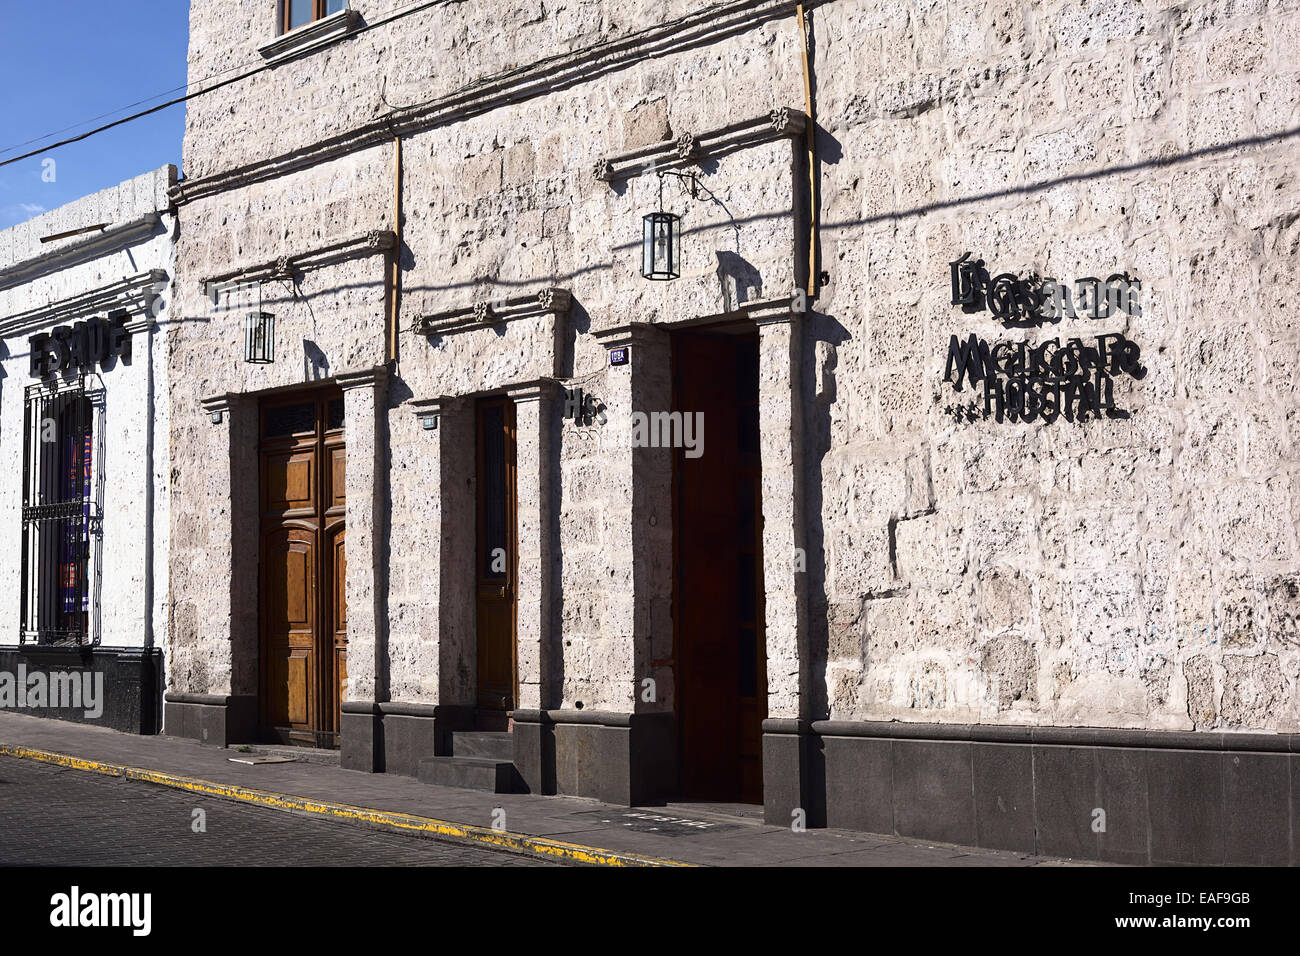 La Casa de Melgar Hostal on Melgar street on September 9, 2014 in Arequipa, Peru Stock Photo